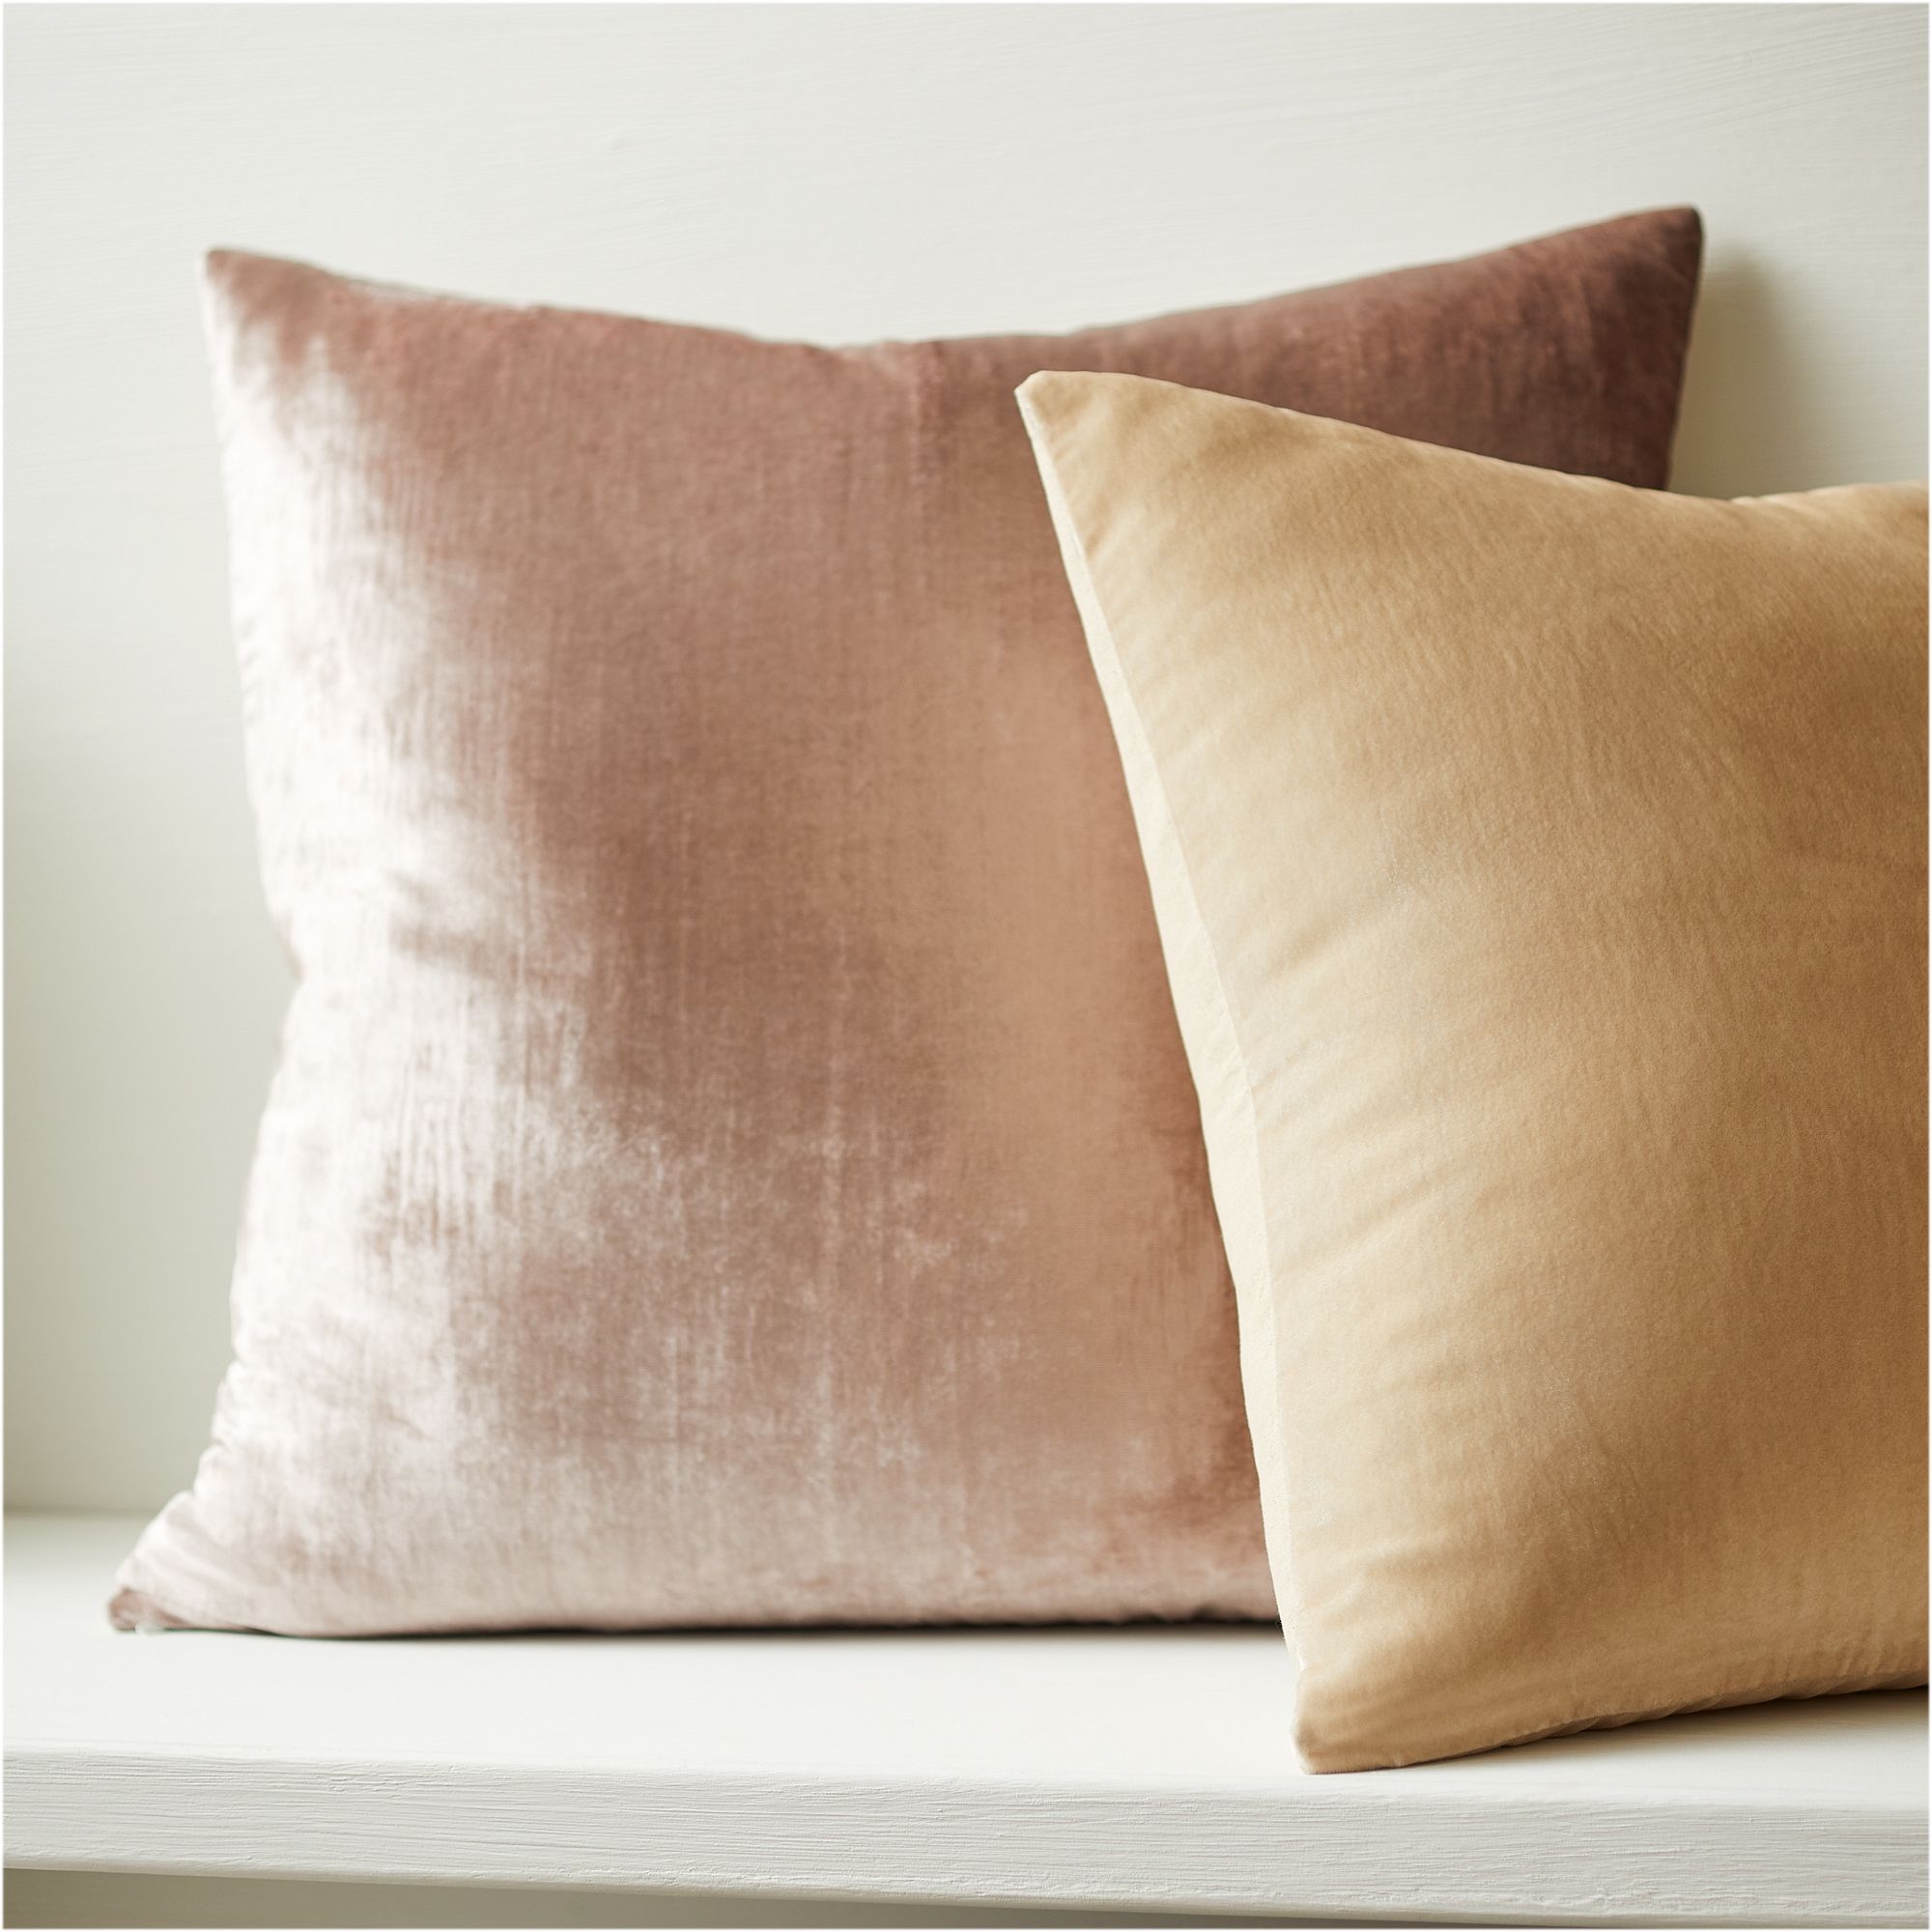 Lush Velvet Pillow Cover, Sand, 20x20 - Image 2